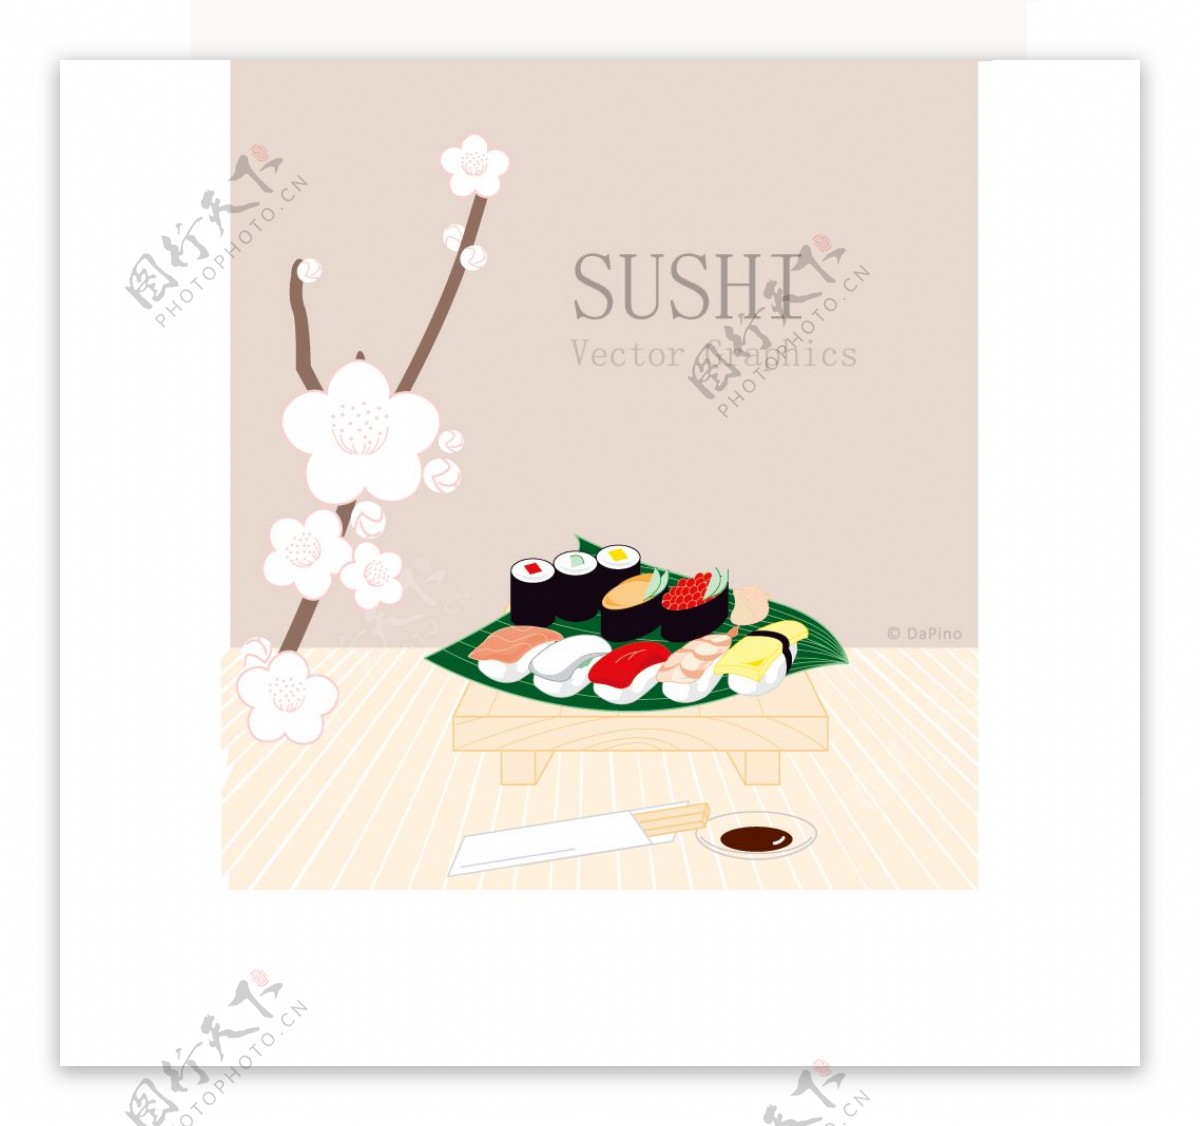 日式风味的寿司